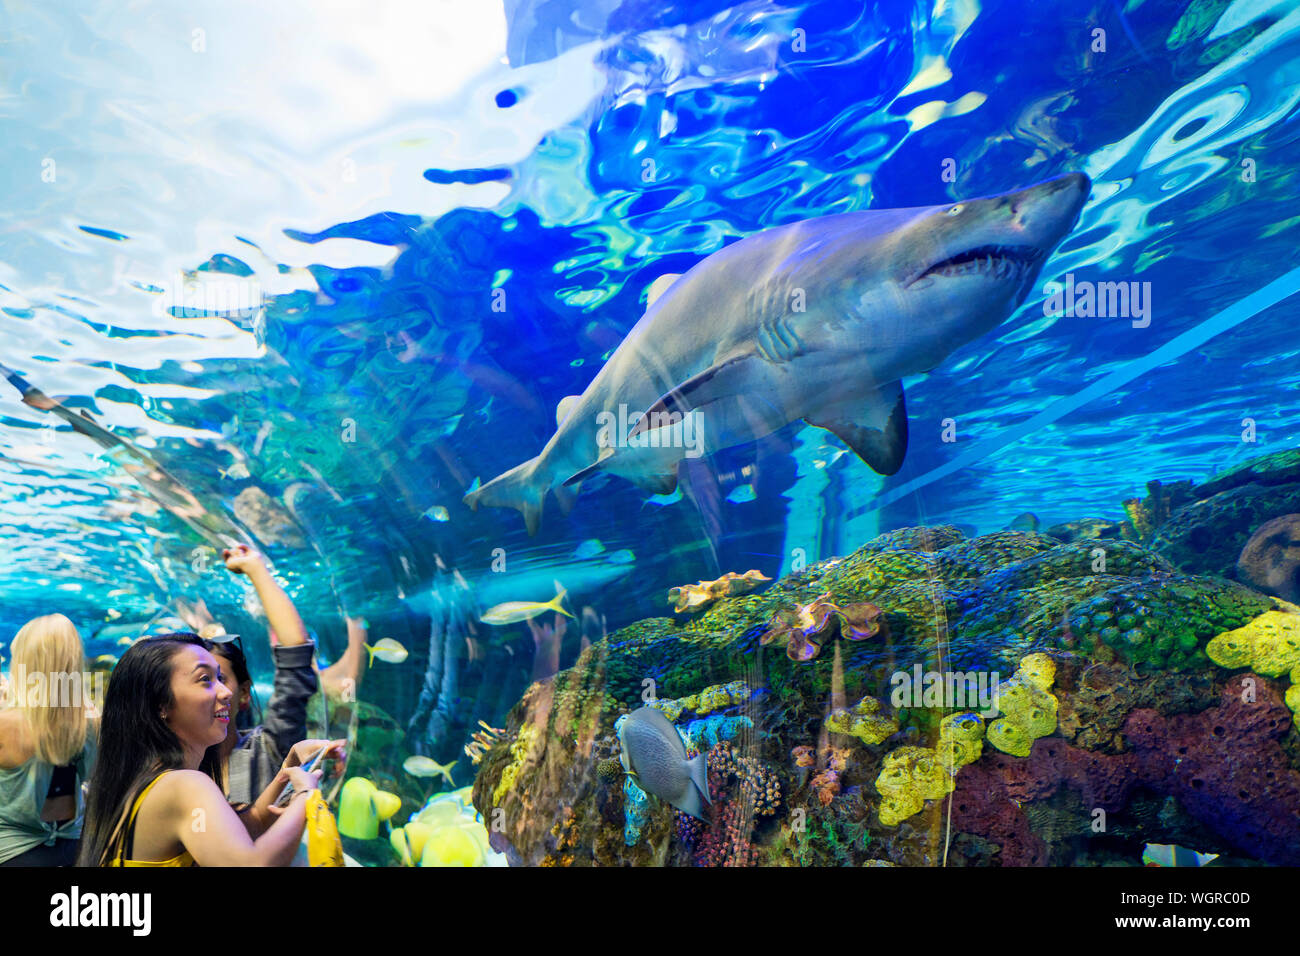 Ripley's Aquarium von Kanada, Menschen von Haien und anderen Sea Life bei einer öffentlichen Aquarium in Toronto, Touristen anzeigen Meerestiere Stockfoto